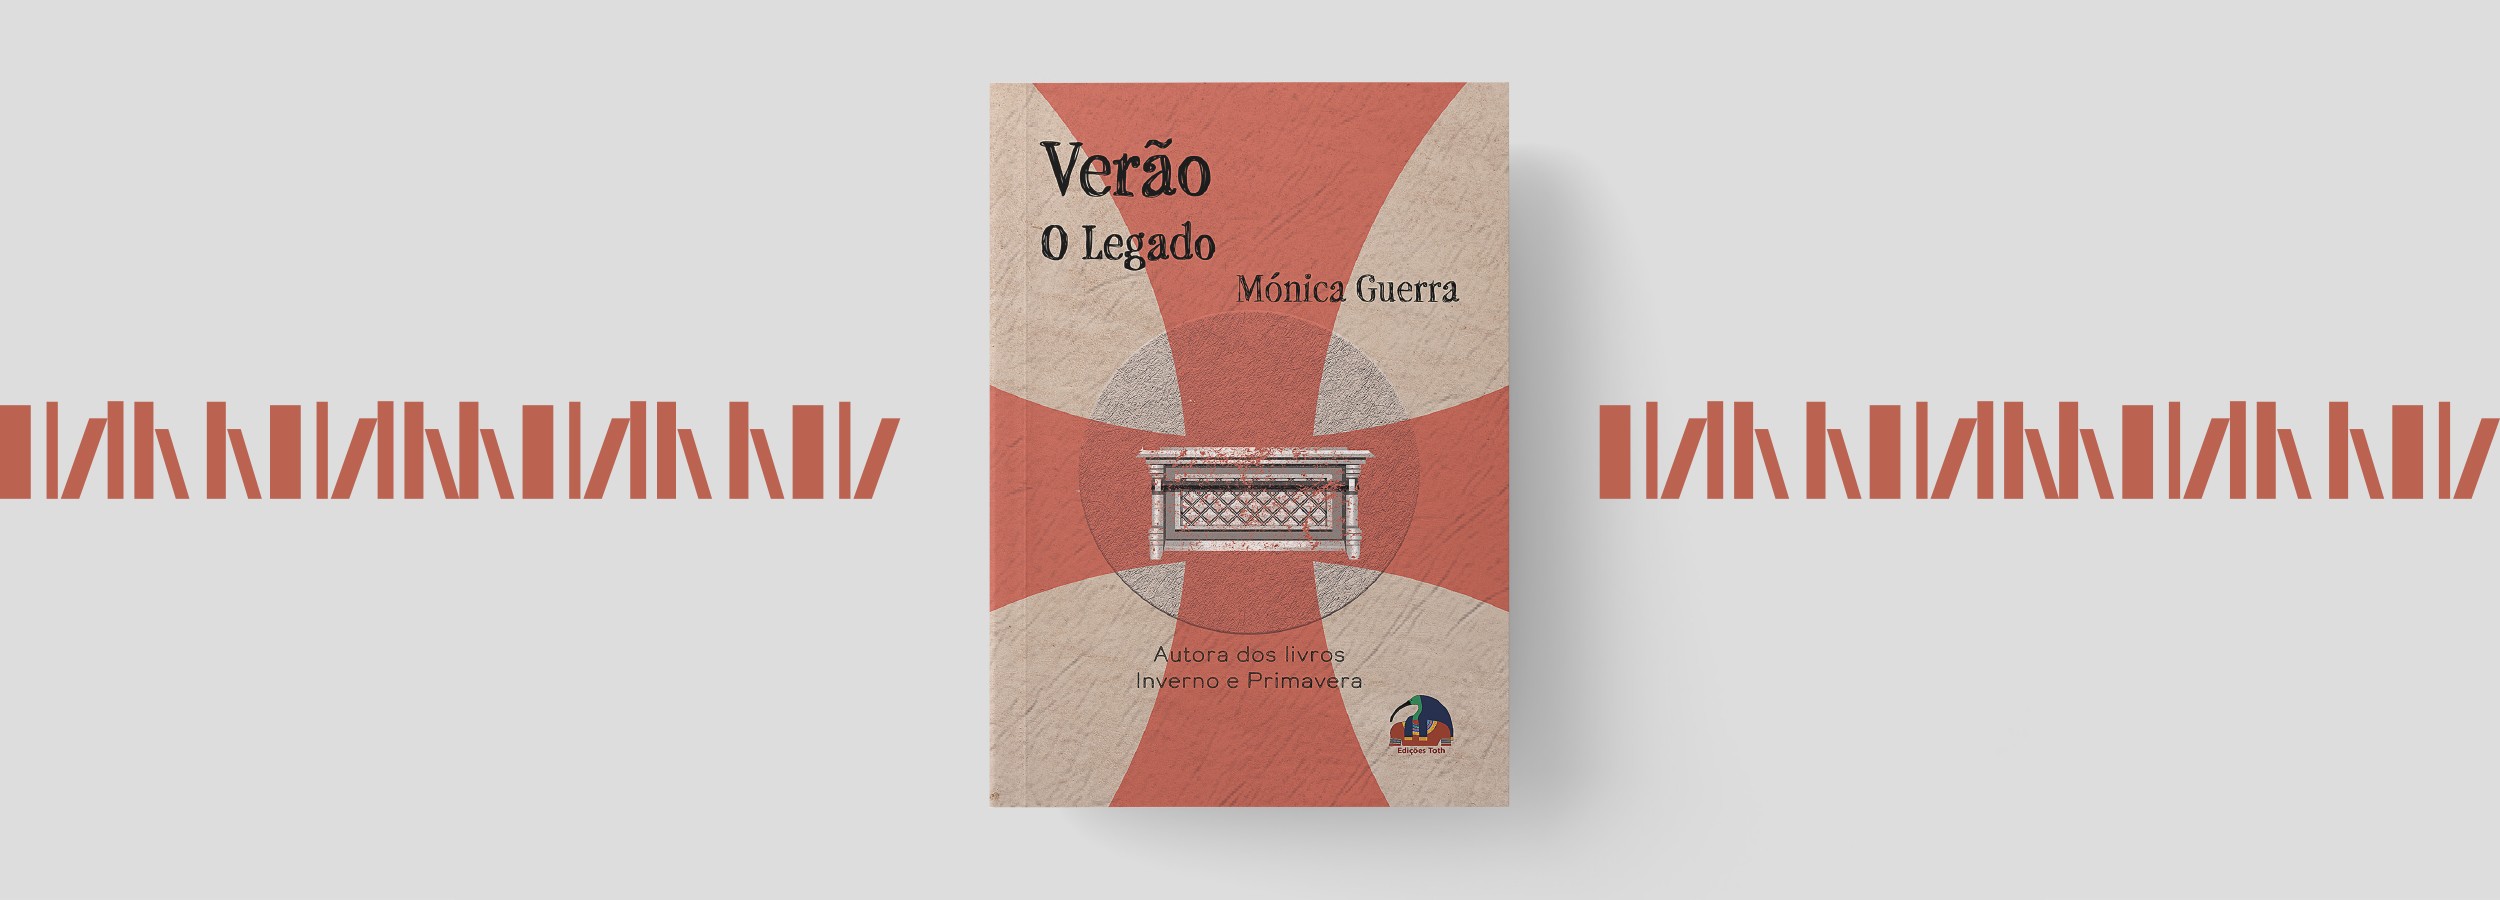 Apresentação literária na Semana da Poesia: "Verão: no legado" de Mónica Guerra